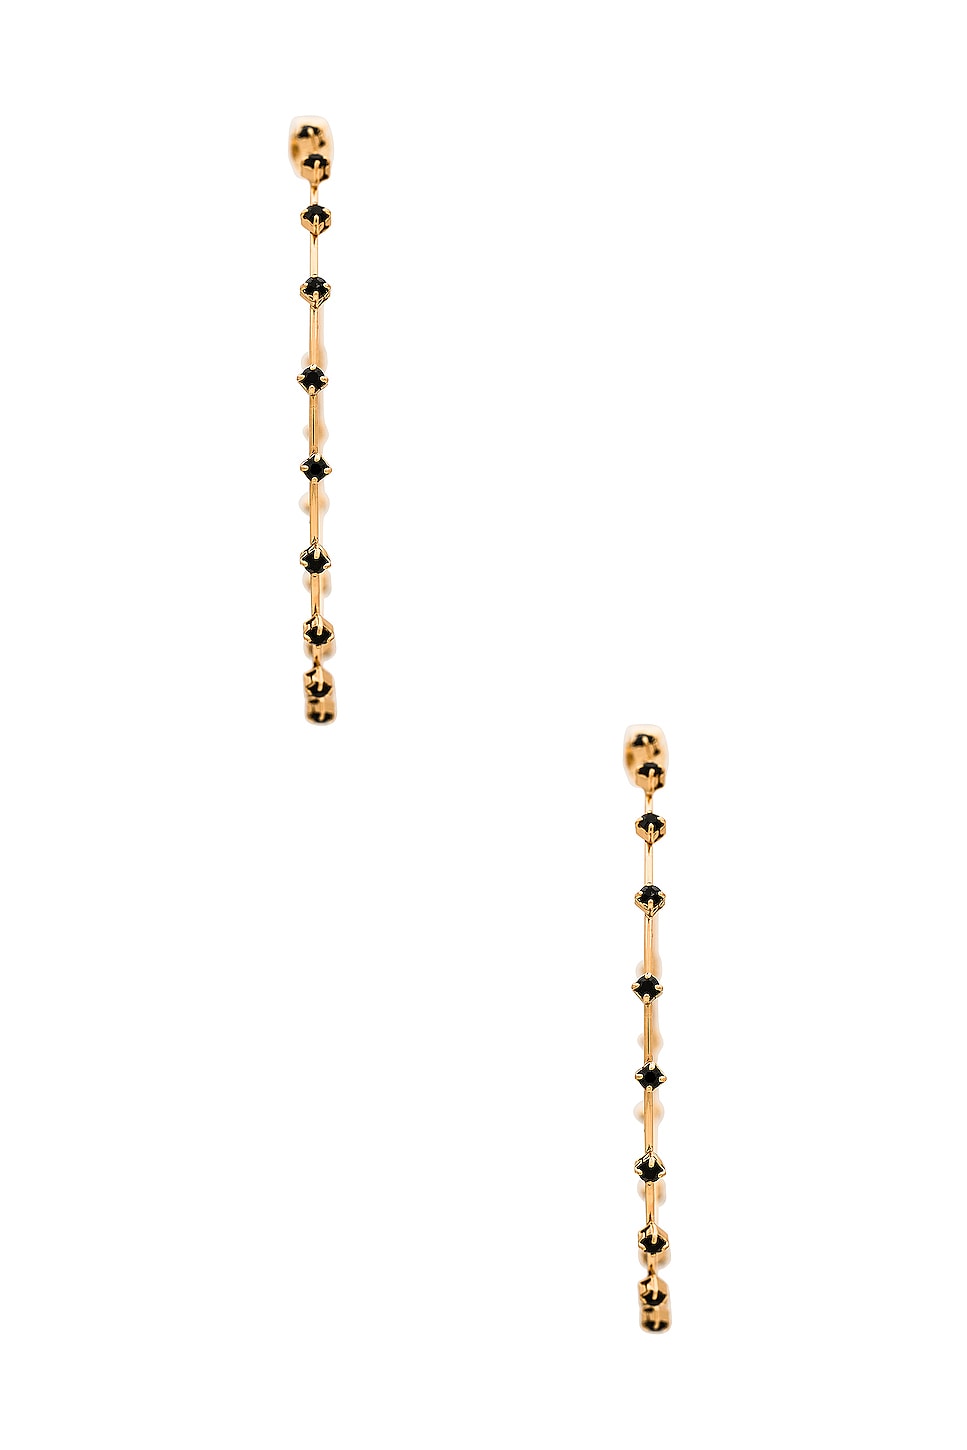 Rhinestone Hoop Earrings - Black - SHOPJAUS - JAUS